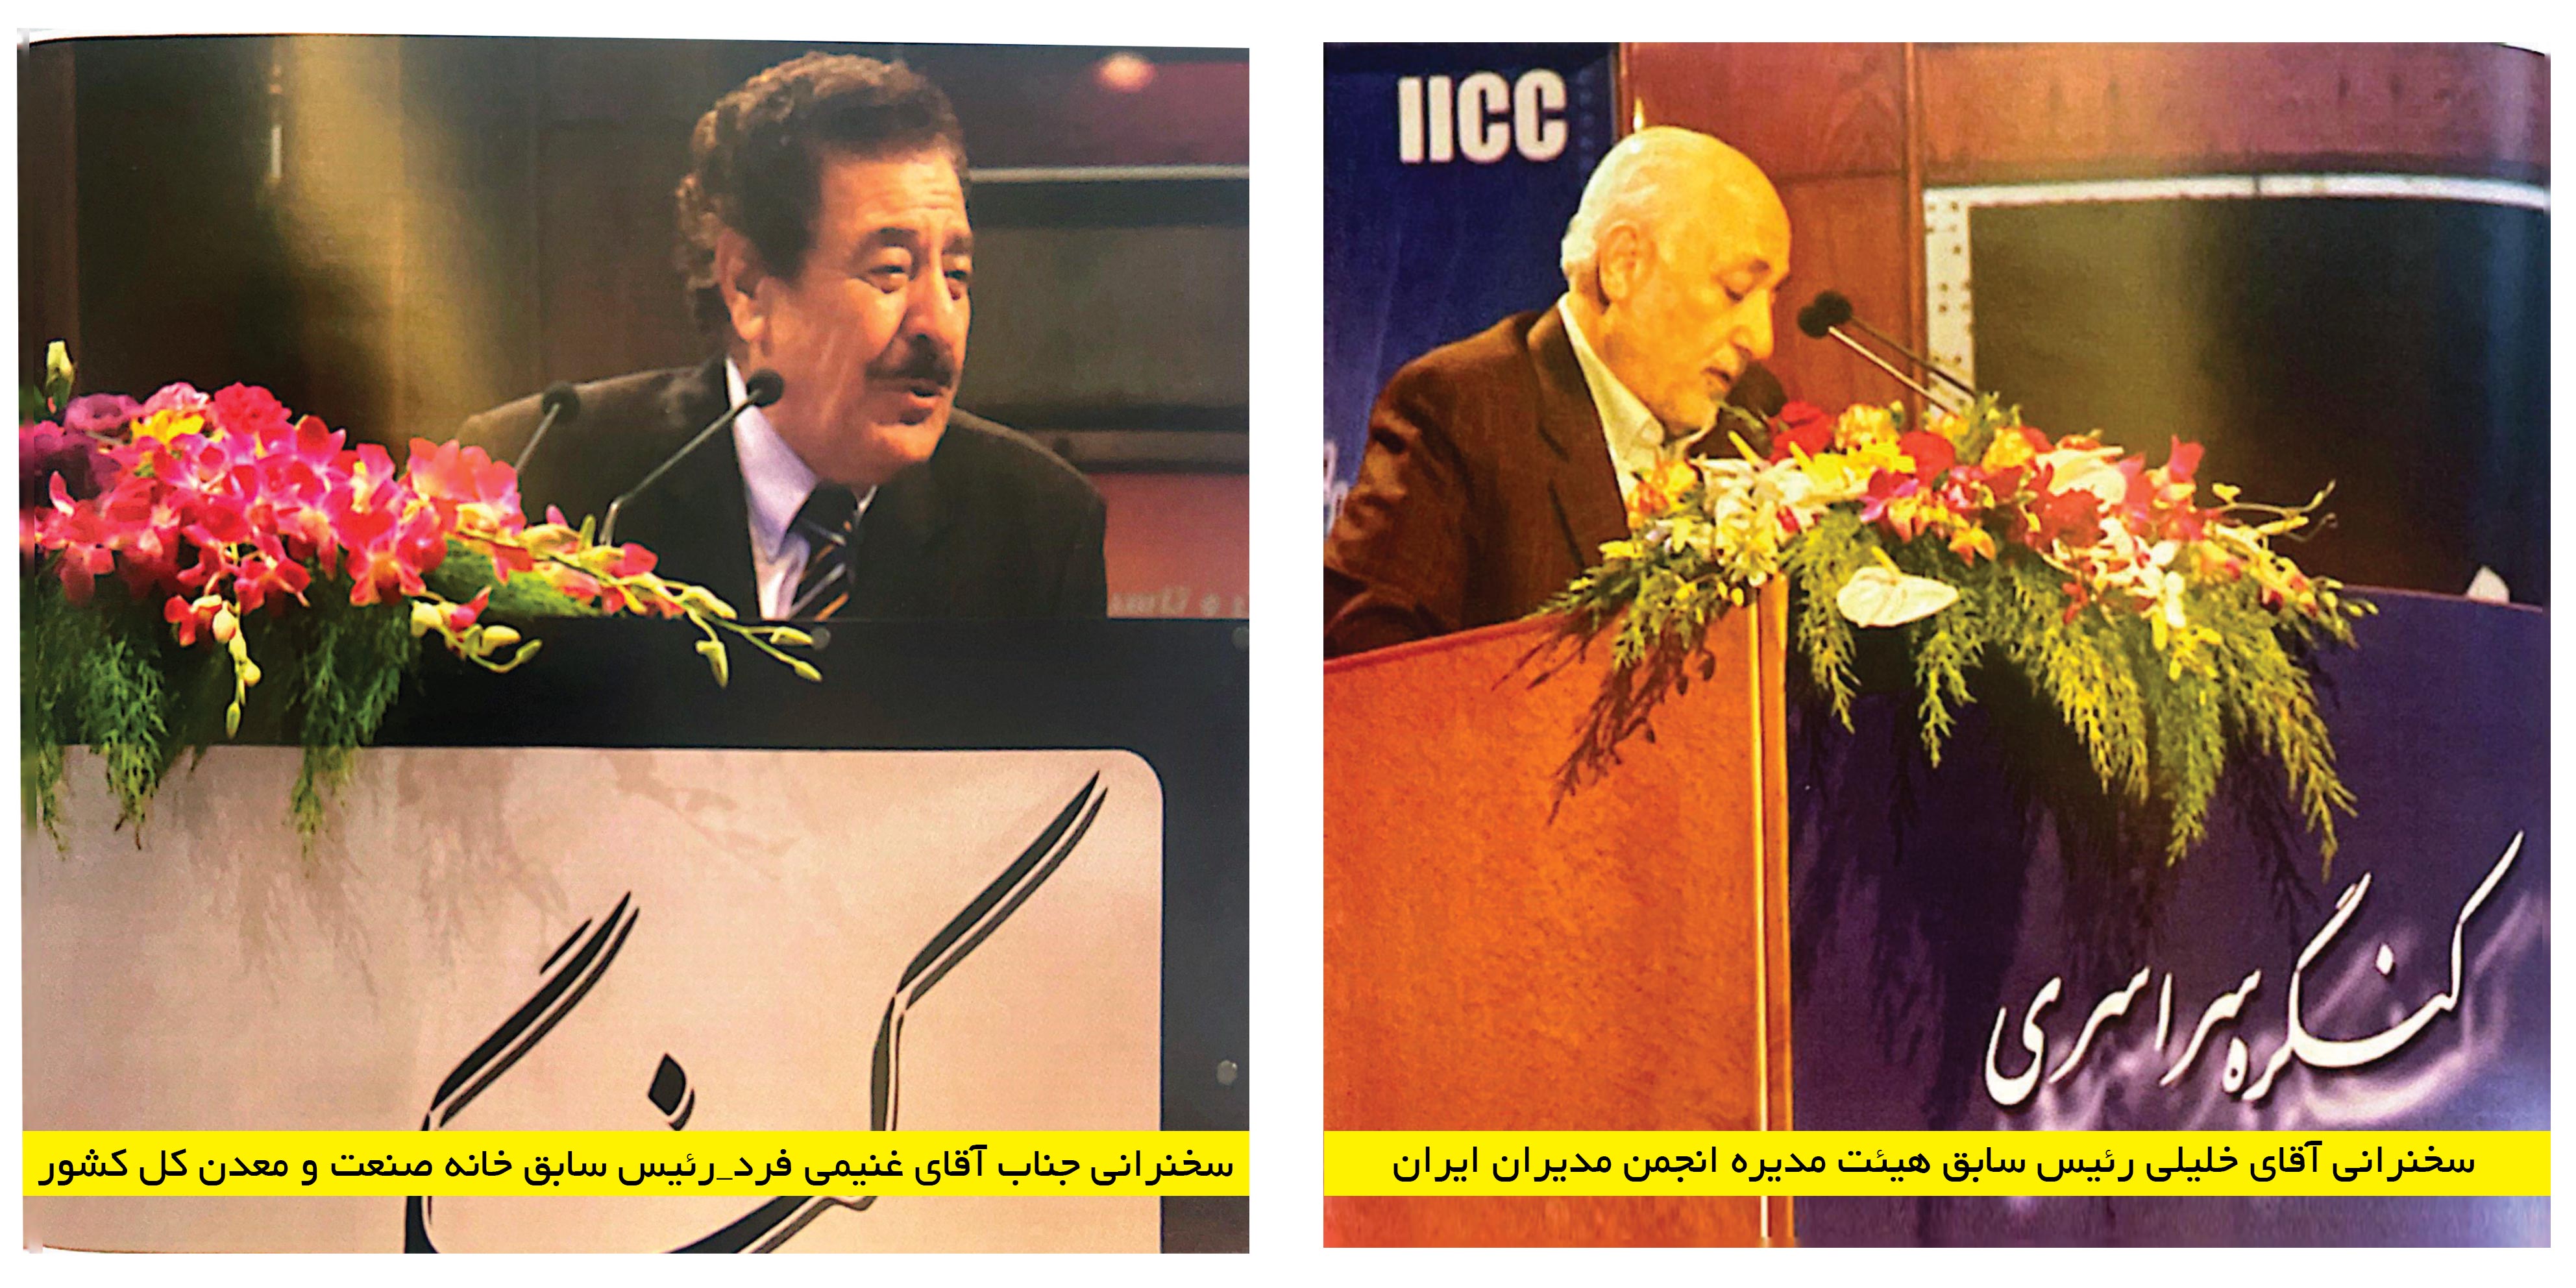 کنگره سراسری مدیران ایران